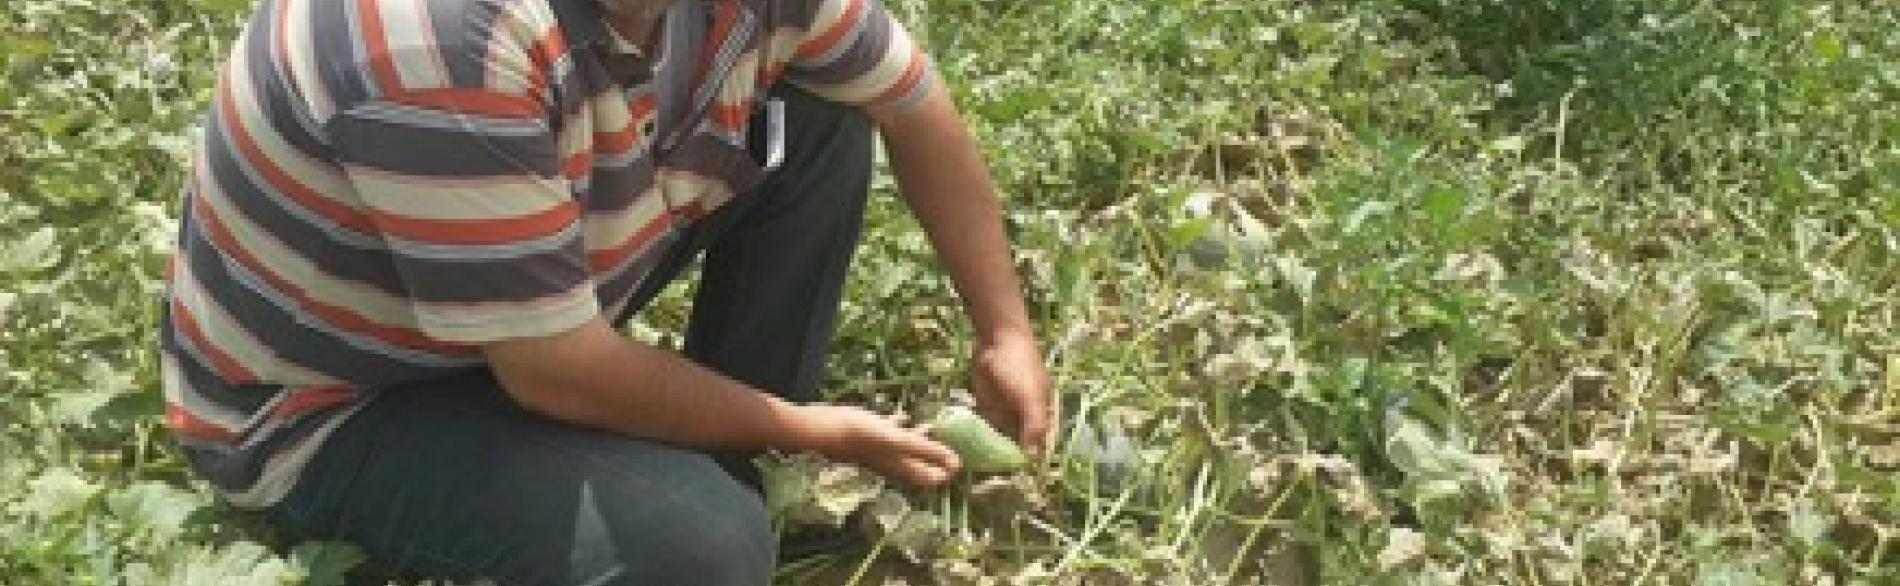 طارق العمور يظهر منتوجاته الزراعية المتدنية الجودة. آب/أغسطس. صورة التقتت من قبل قطاع الأمن الغذائي.